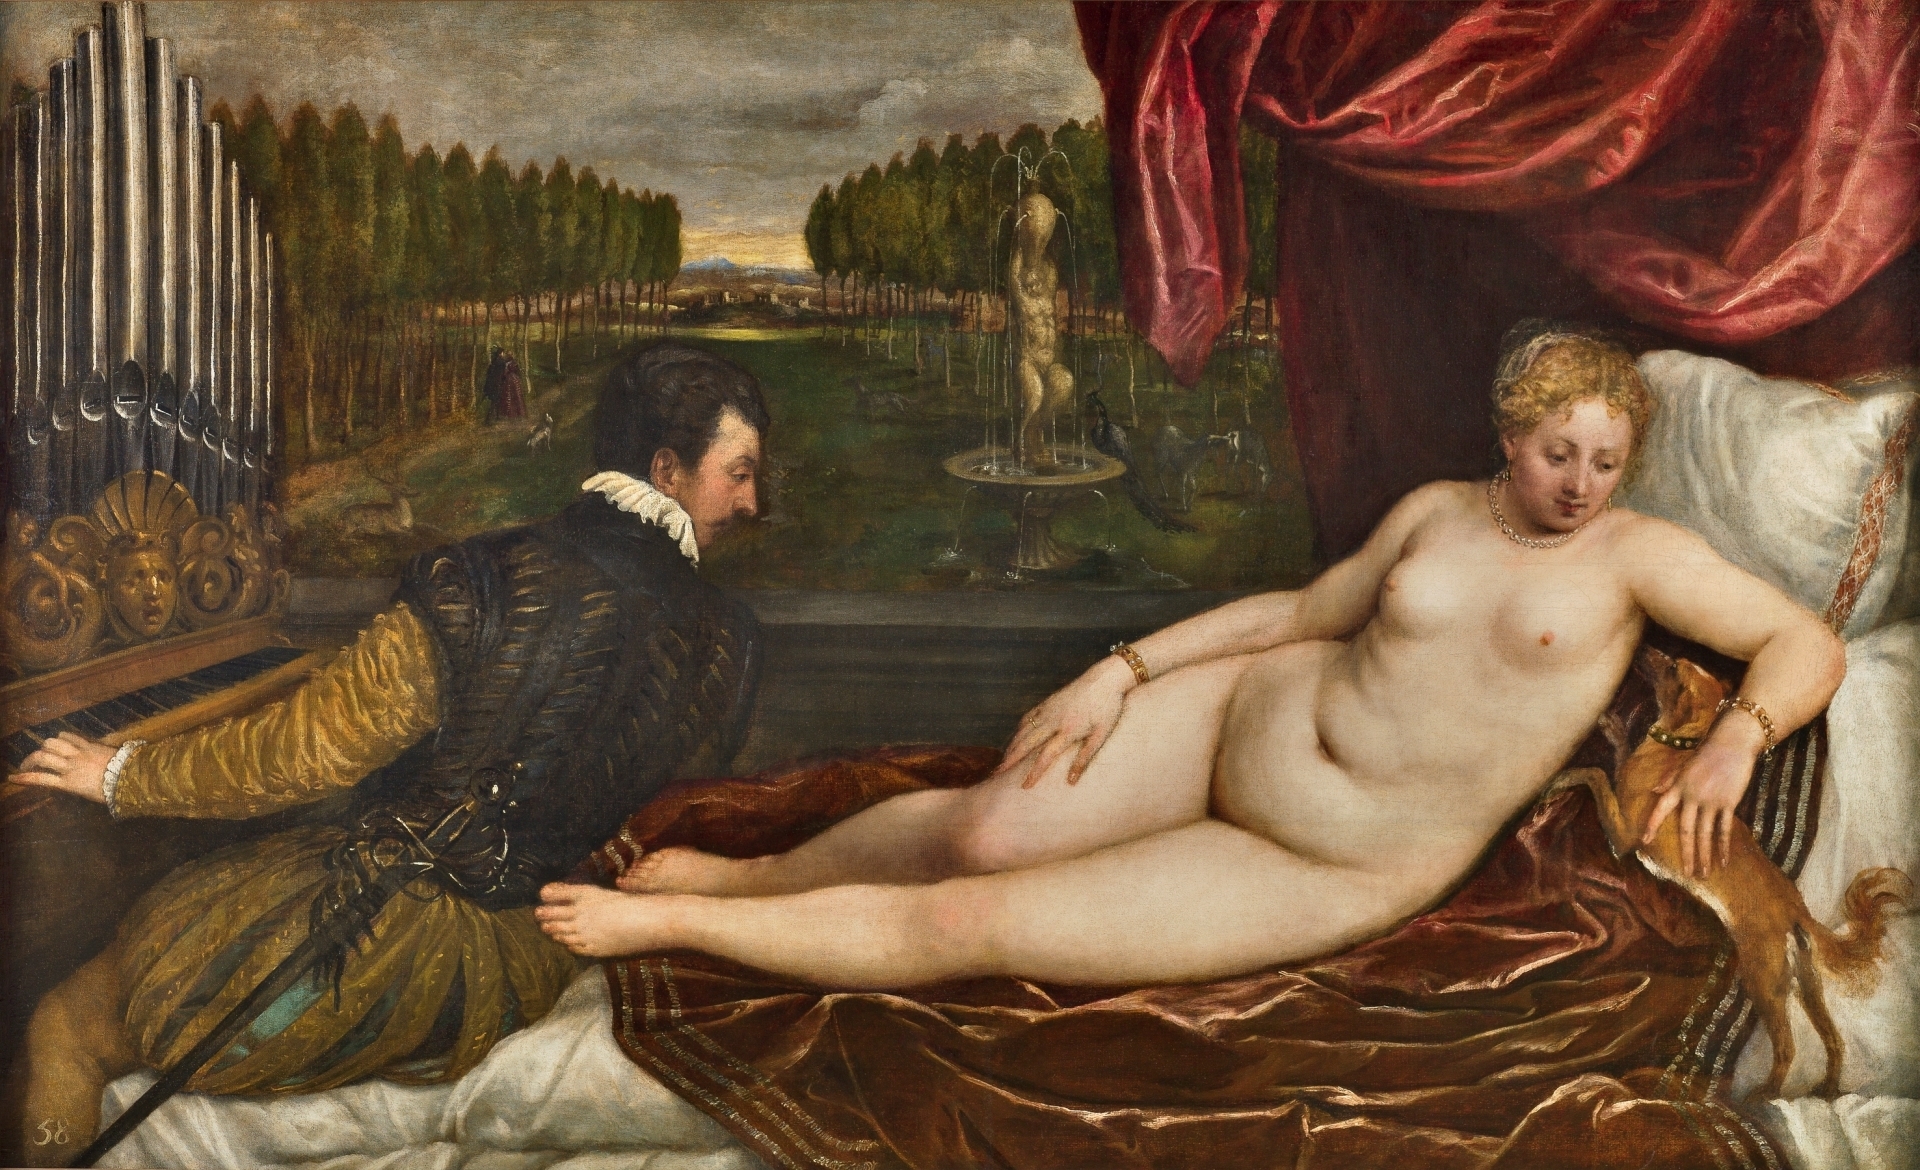 Venus recreándose en la Música. Tiziano. Hacia 1550. Museo del Prado